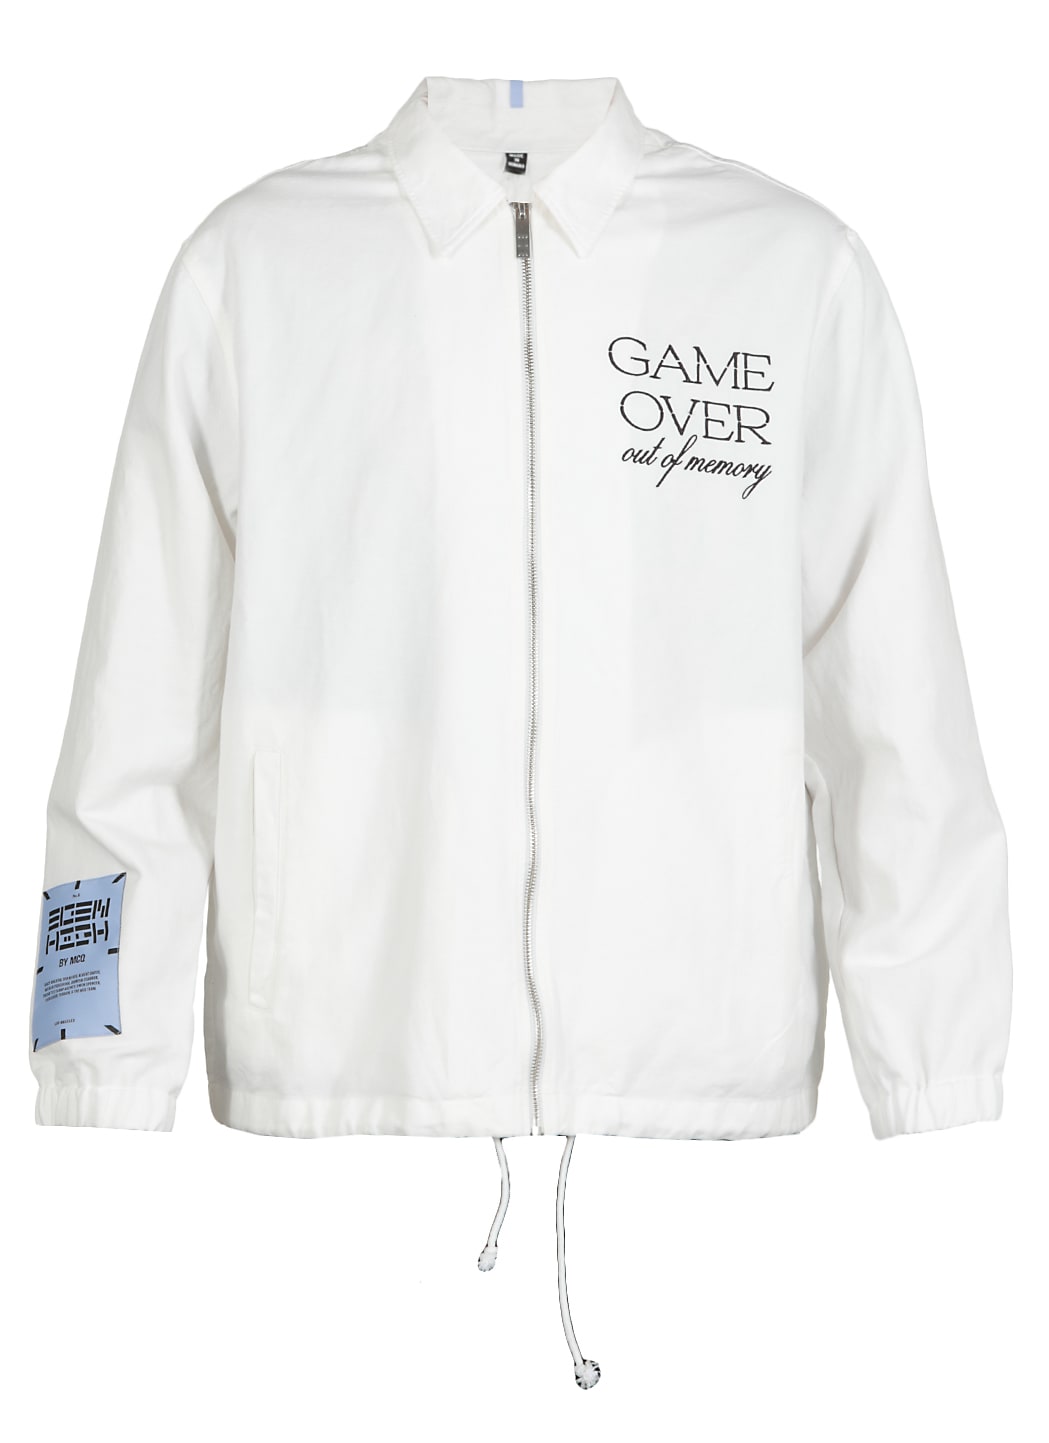 McQ Alexander McQueen Eden High: Cotton And Linen Jacket